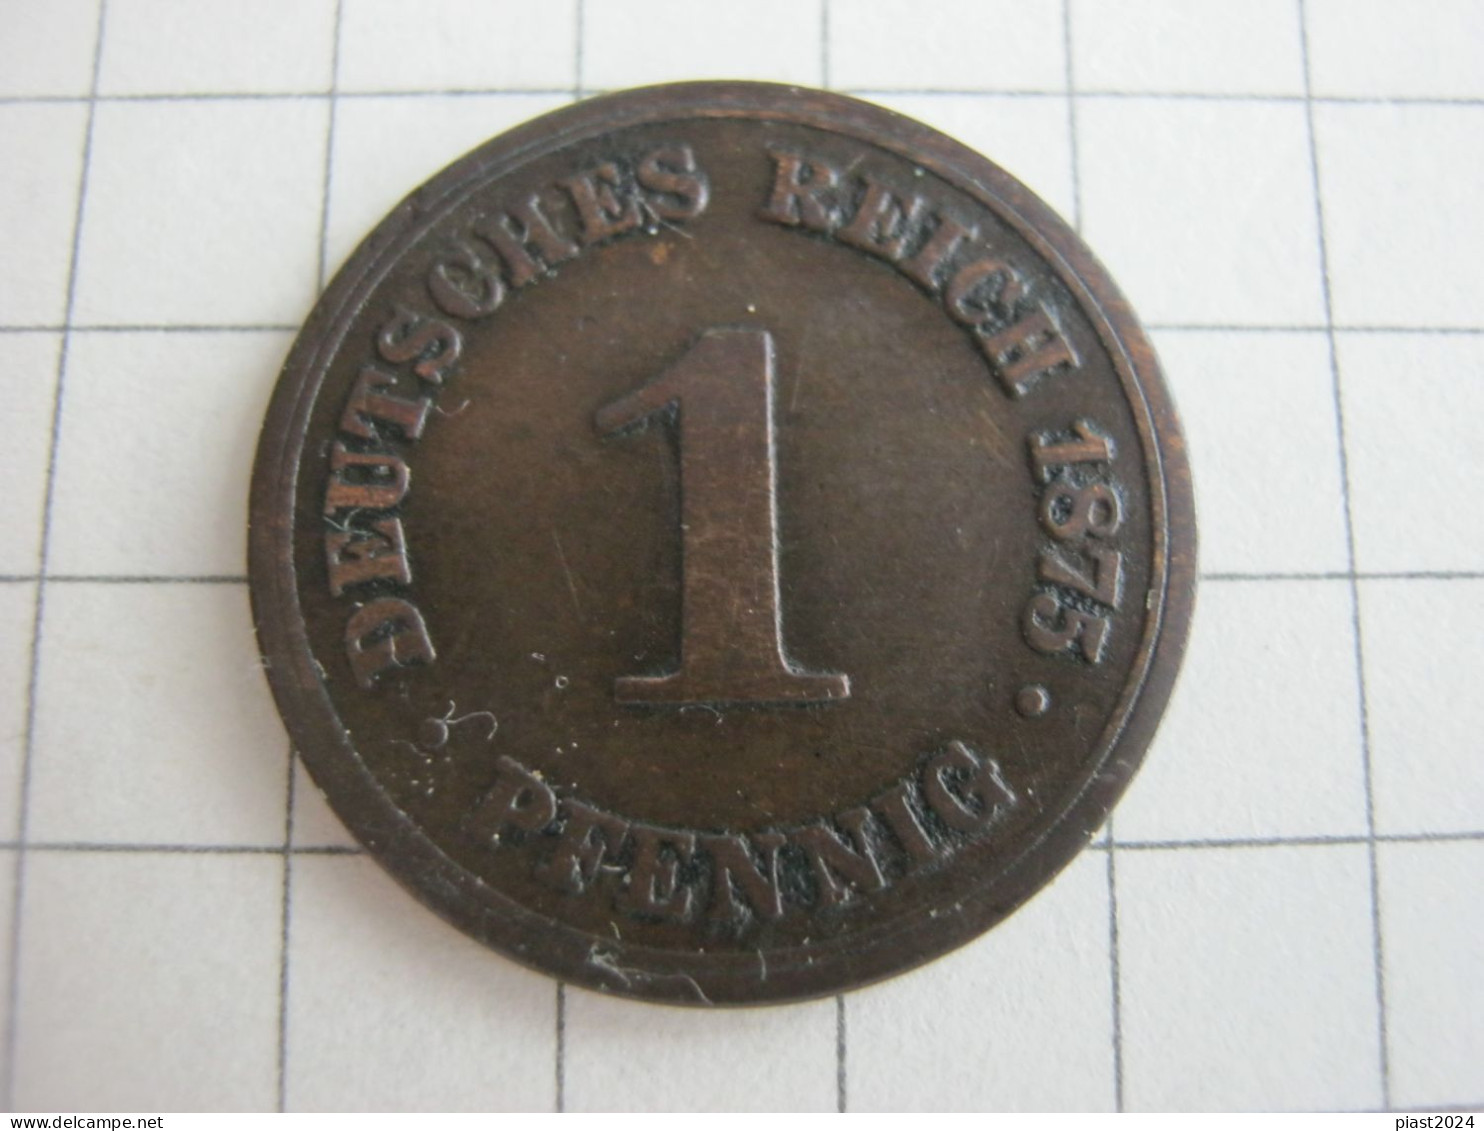 Germany 1 Pfennig 1875 B - 1 Pfennig